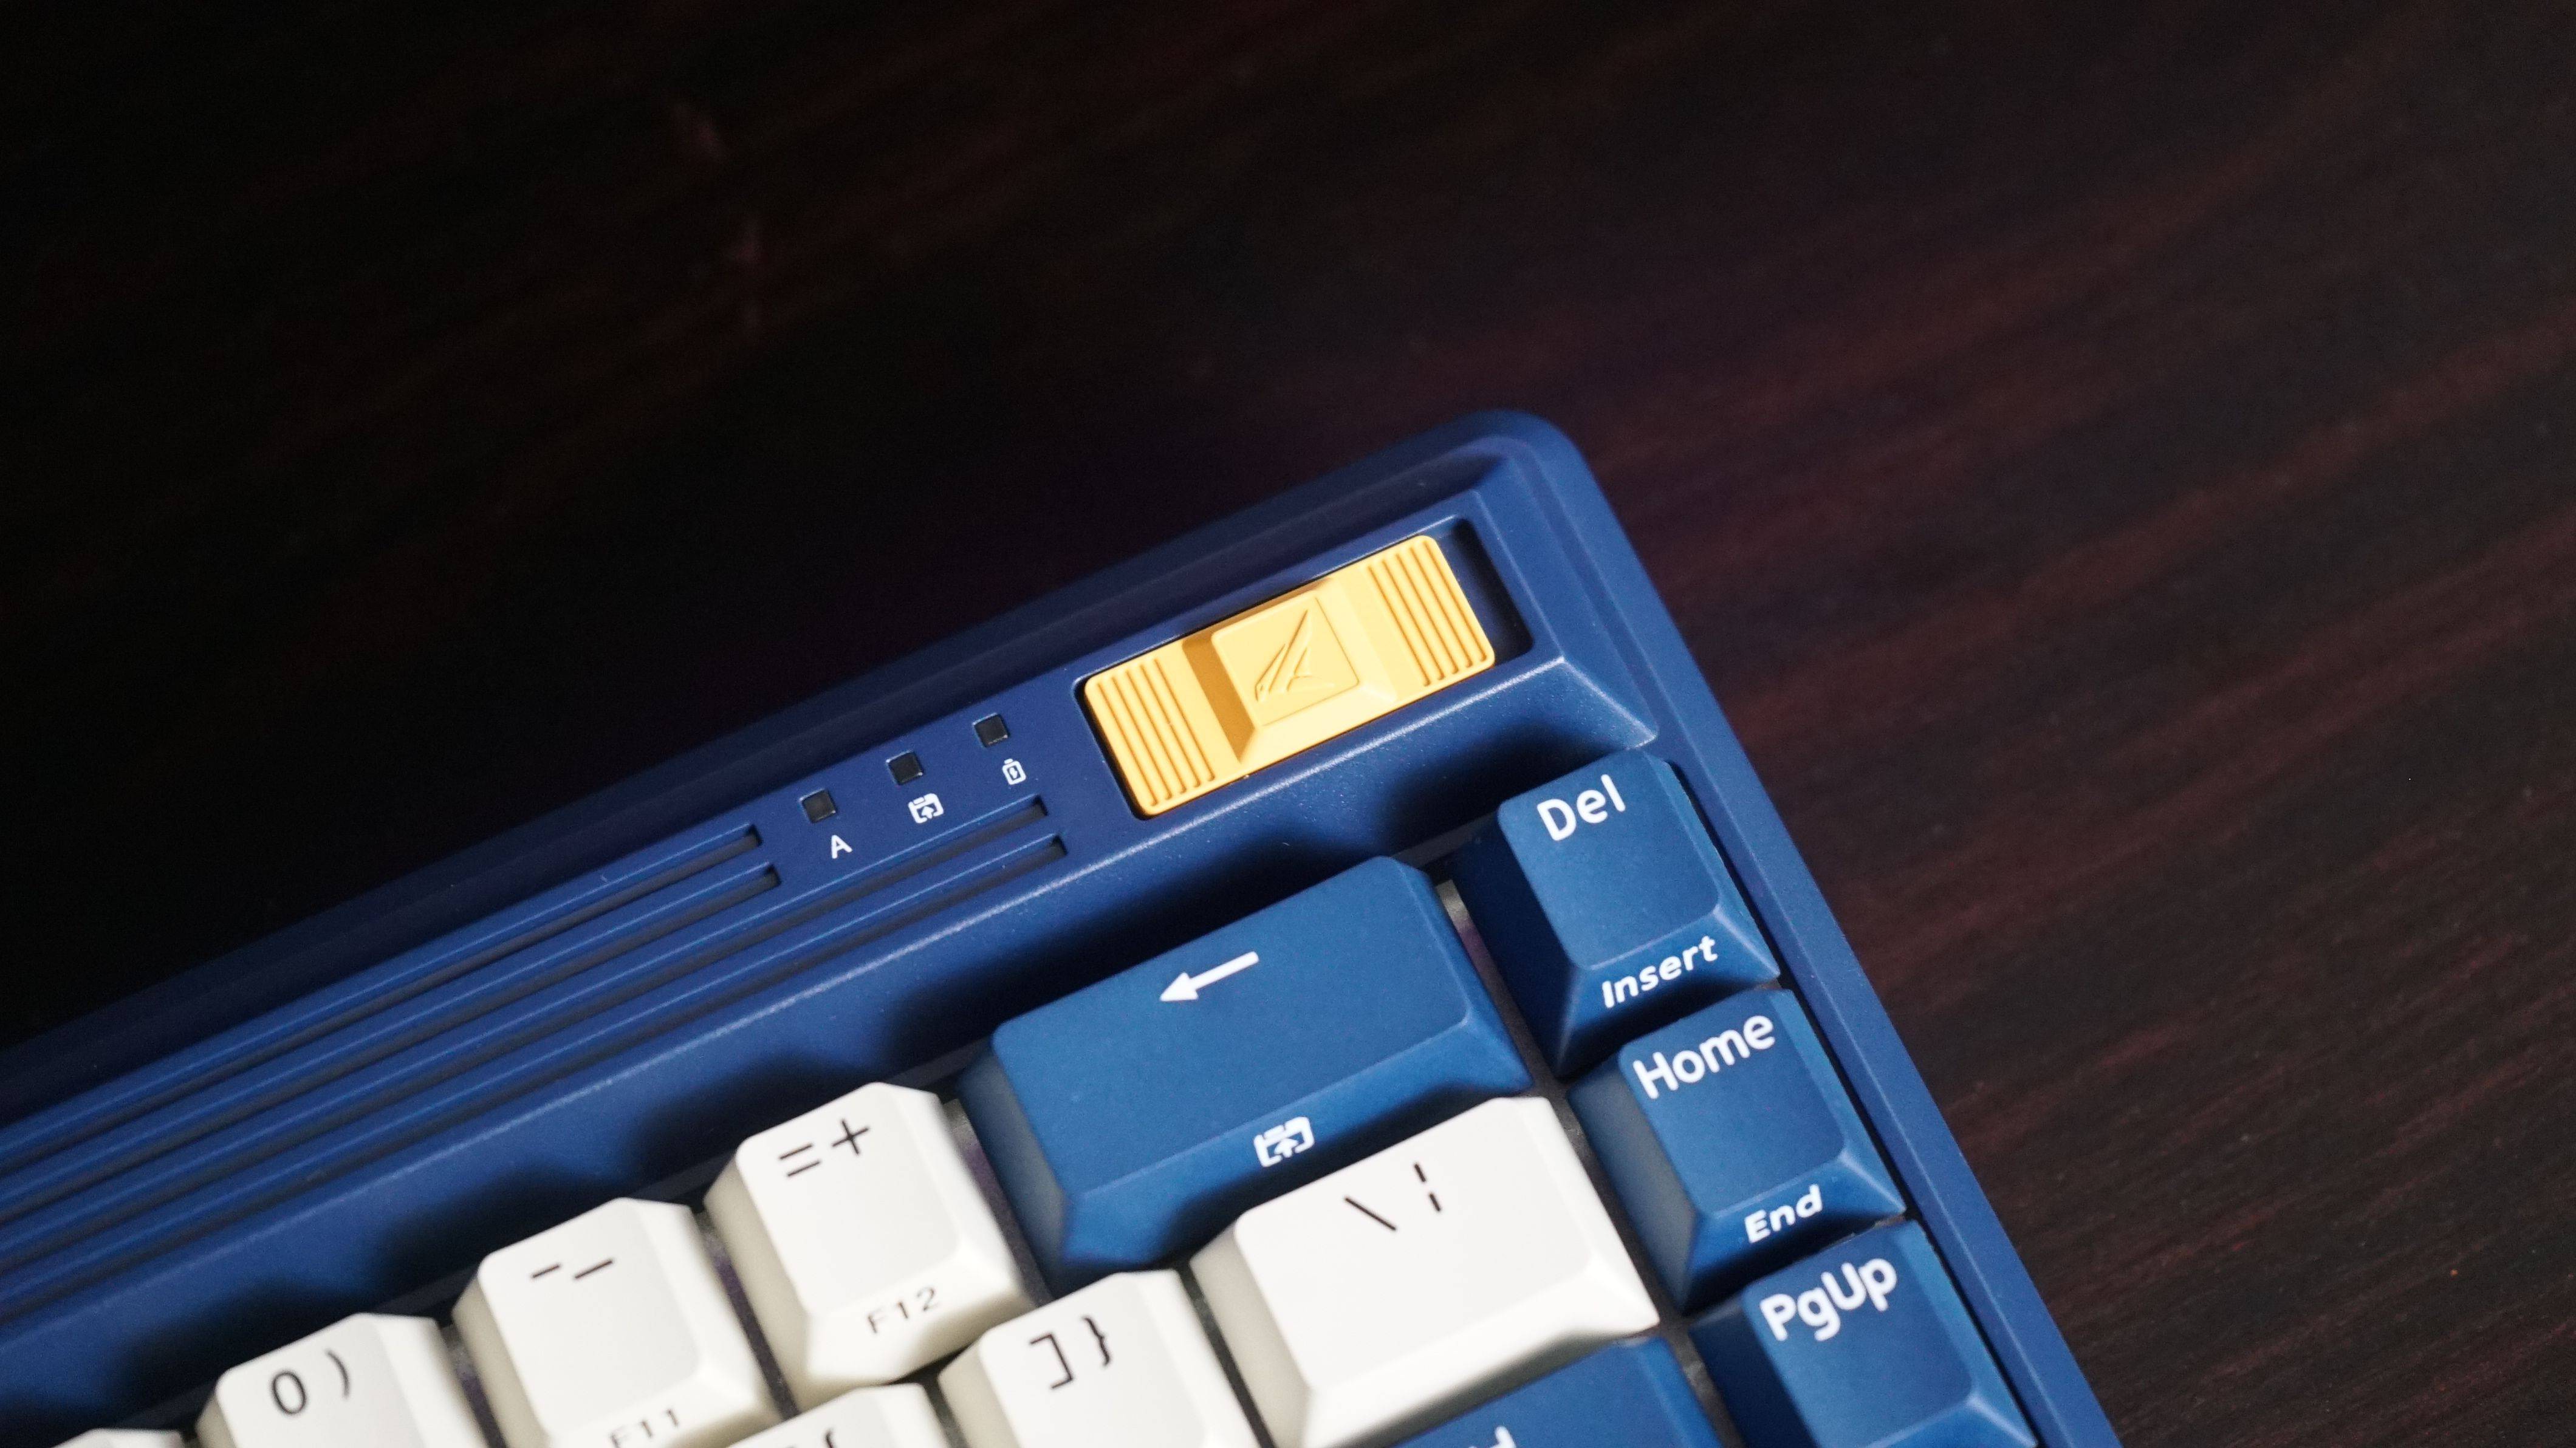 原创             用配色致敬经典，杜伽FUSION将我爱的航海时代带进了三模键盘